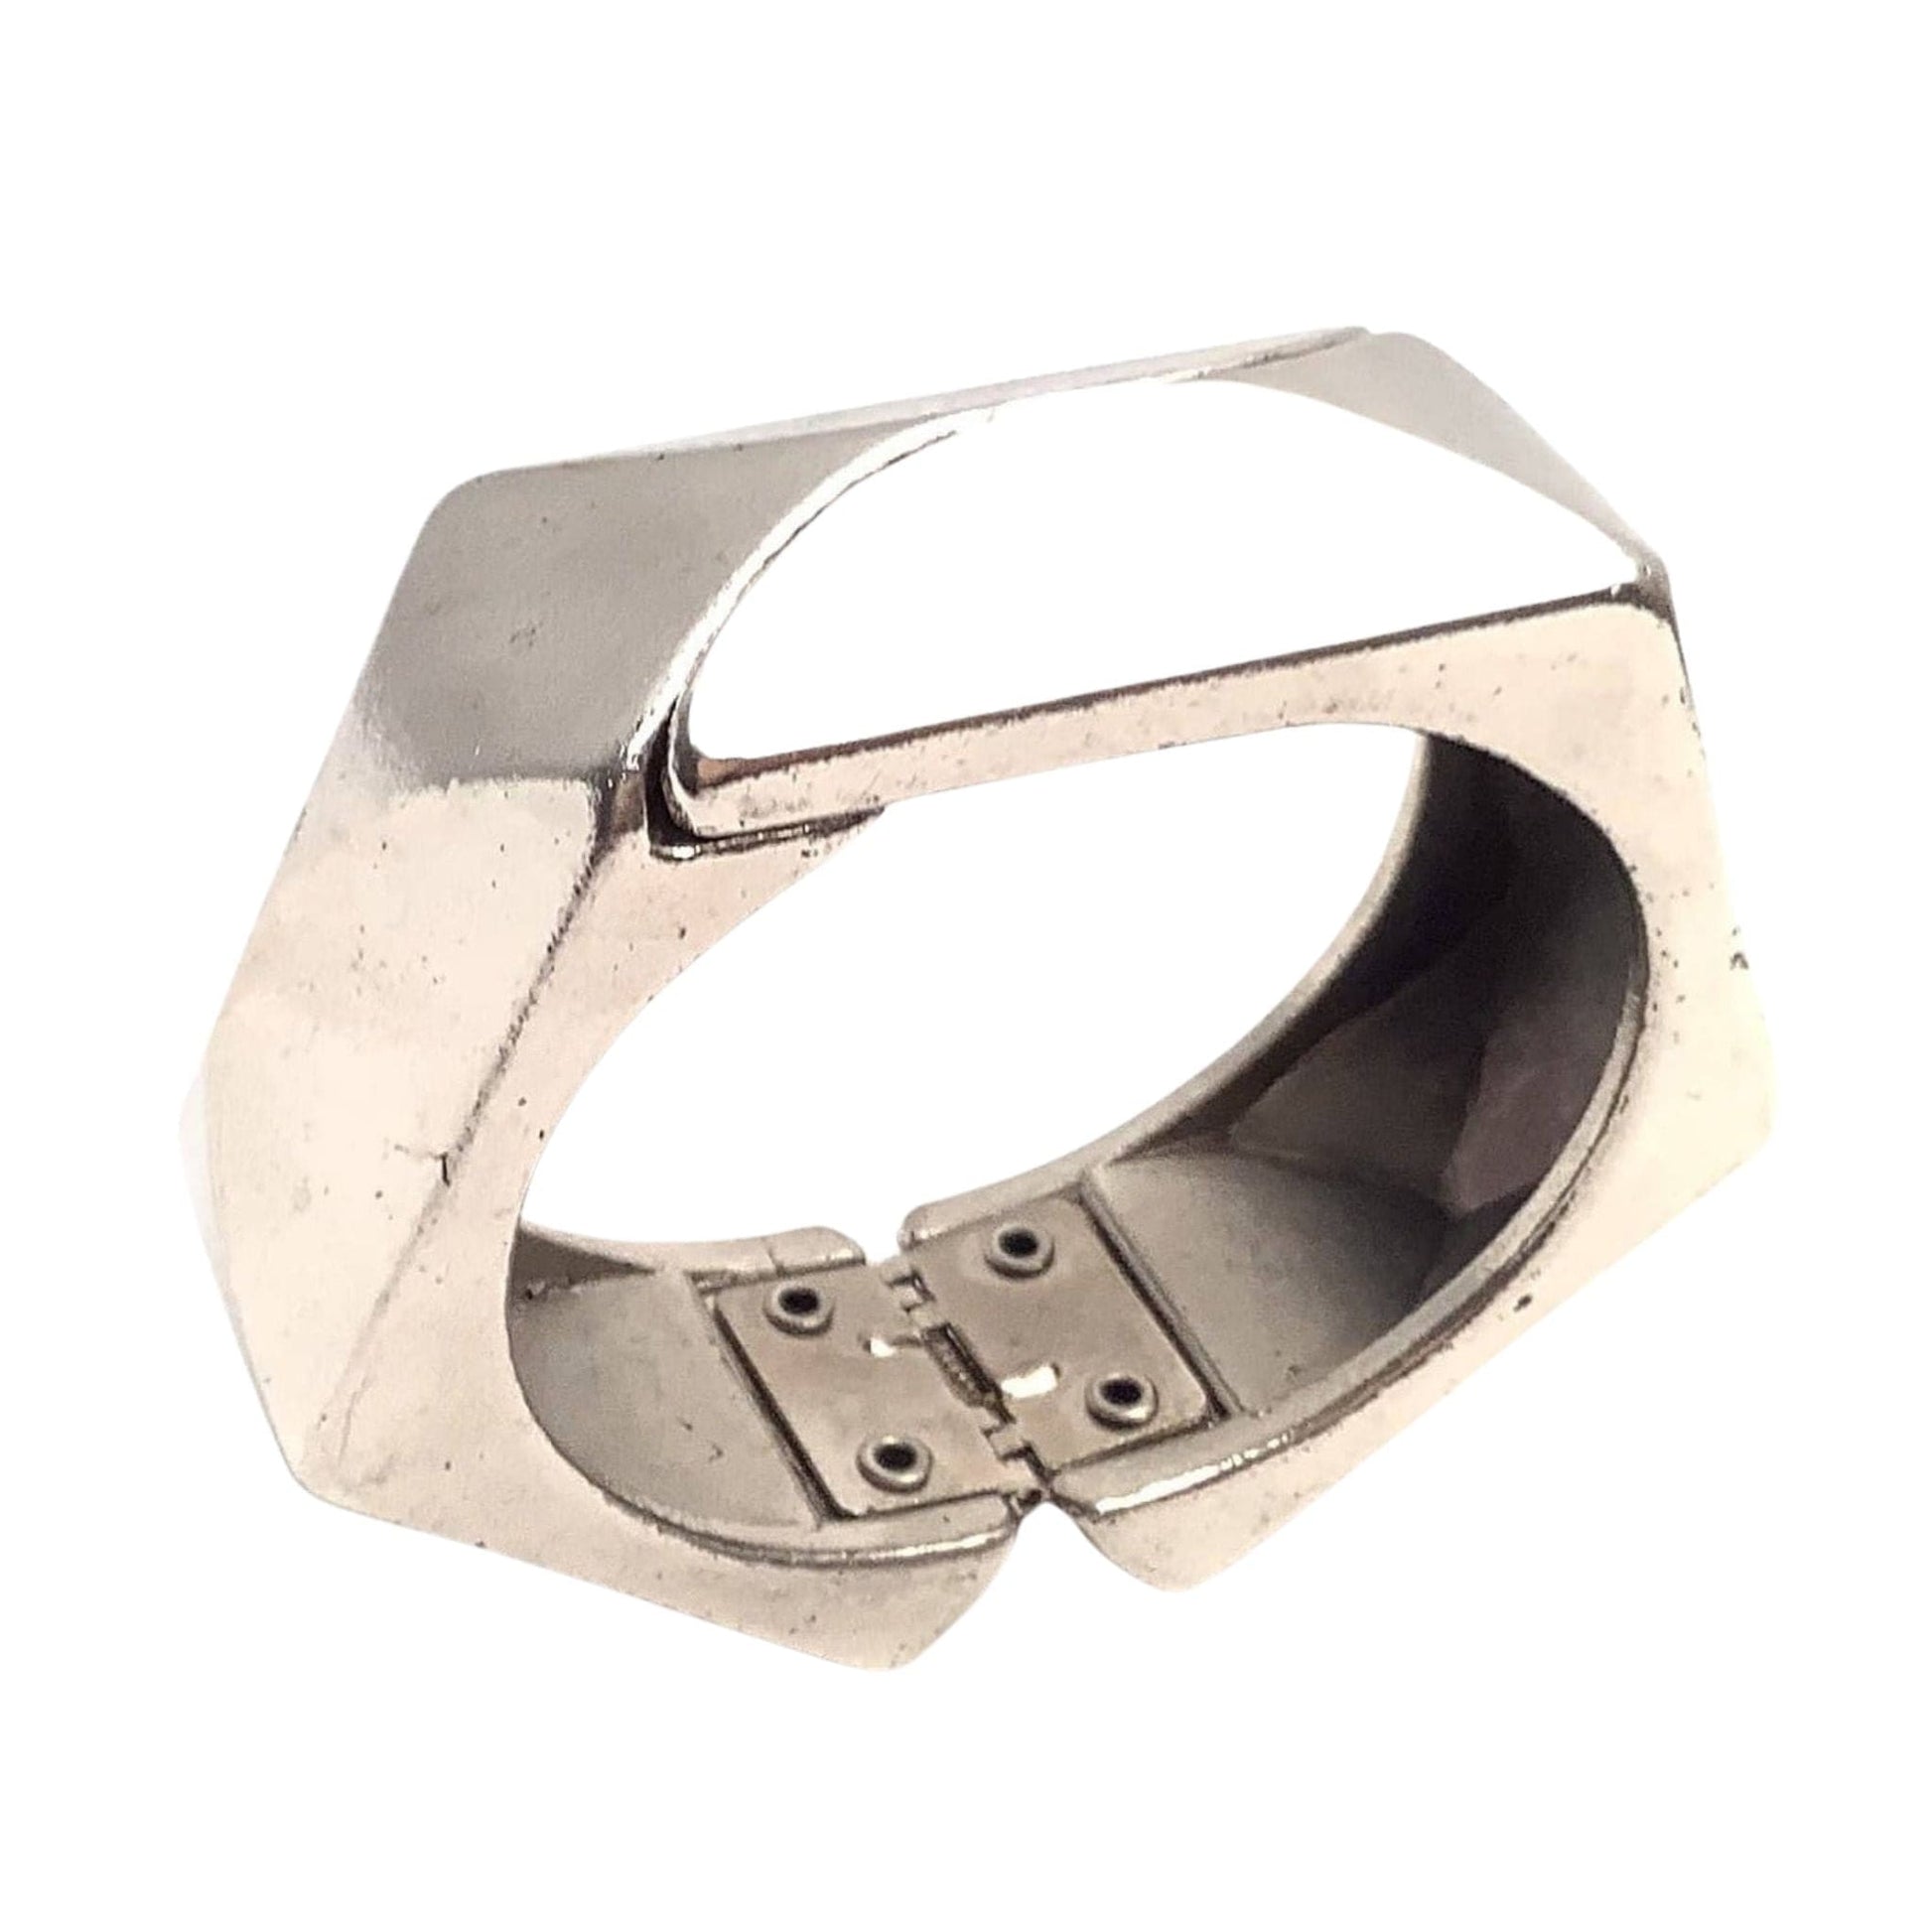 Cubist Cuff Bracelet Silver / Metal / Mod